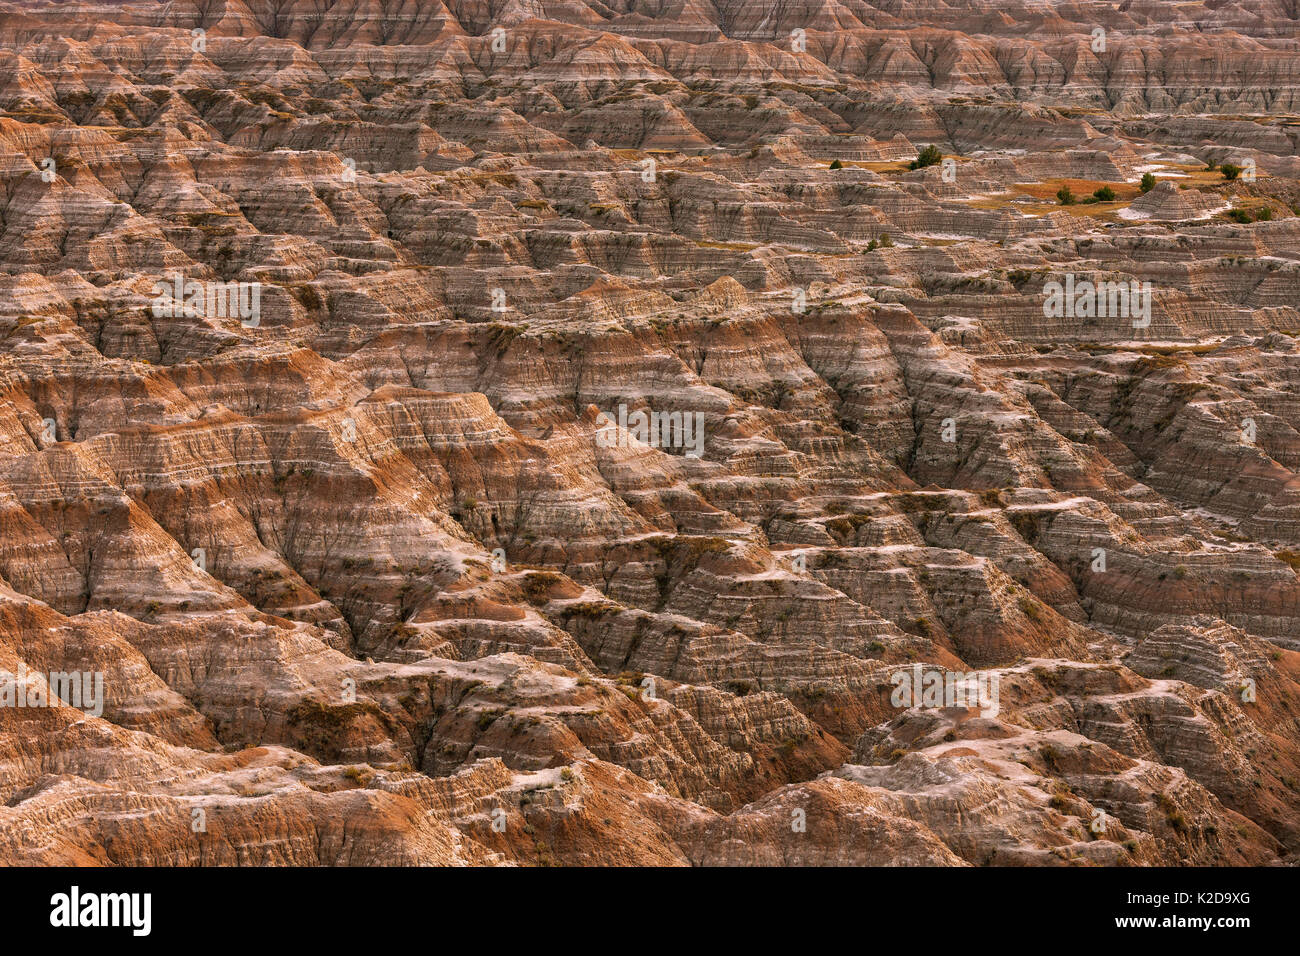 Paesaggio eroso, arenaria striature e le caratteristiche di erosione, Parco nazionale Badlands, Dakota del Sud, Stati Uniti d'America Settembre 2014. Foto Stock